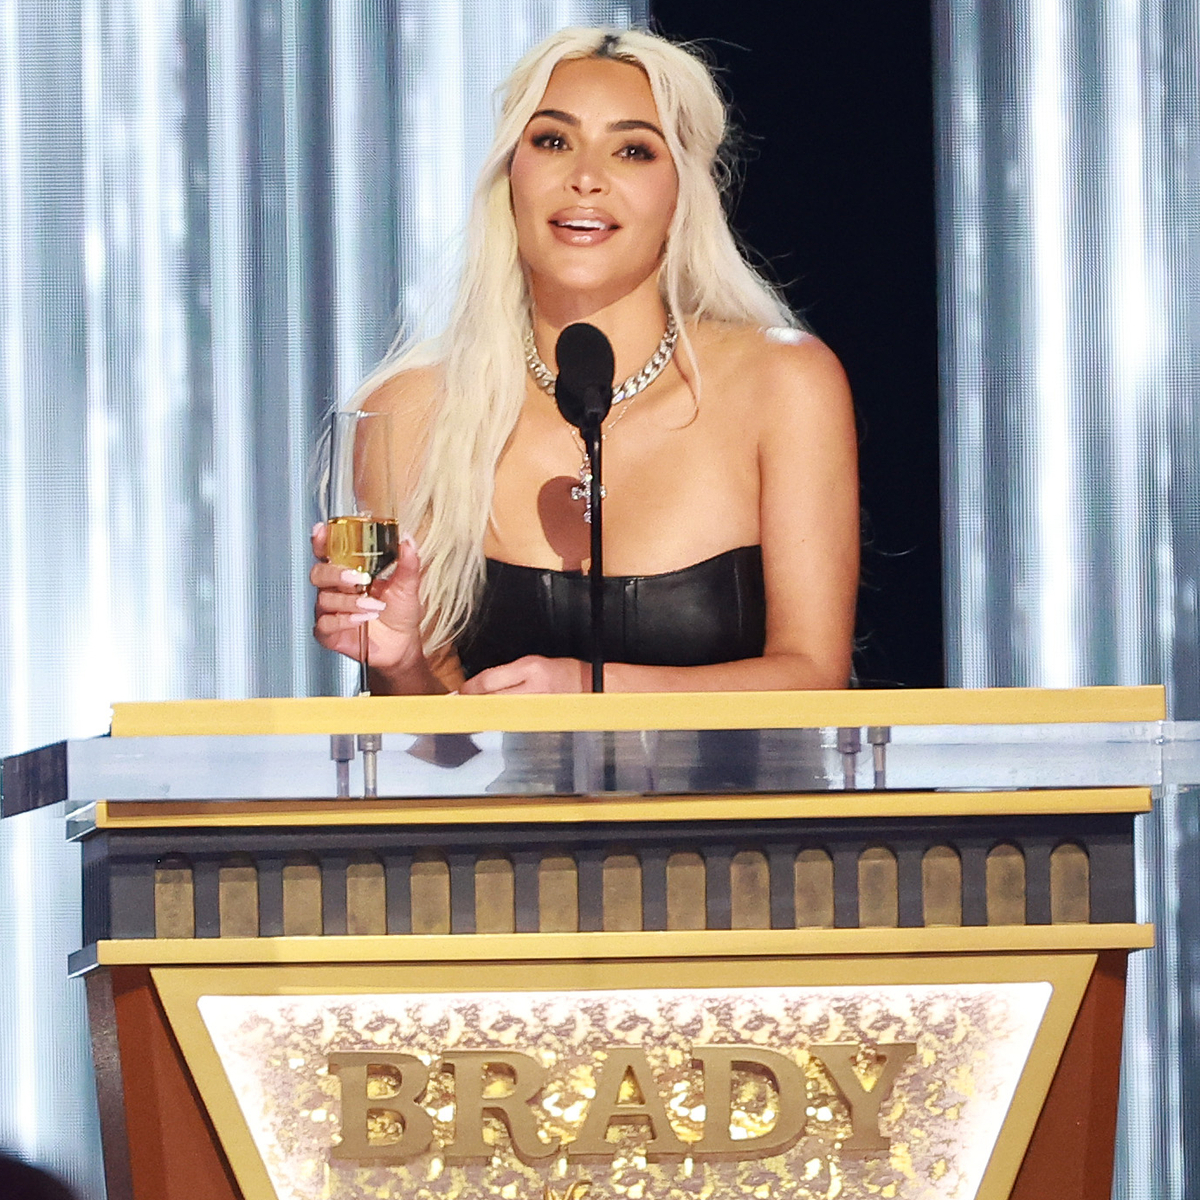 Why Kim Kardashian Got Booed at Tom Brady’s Roast